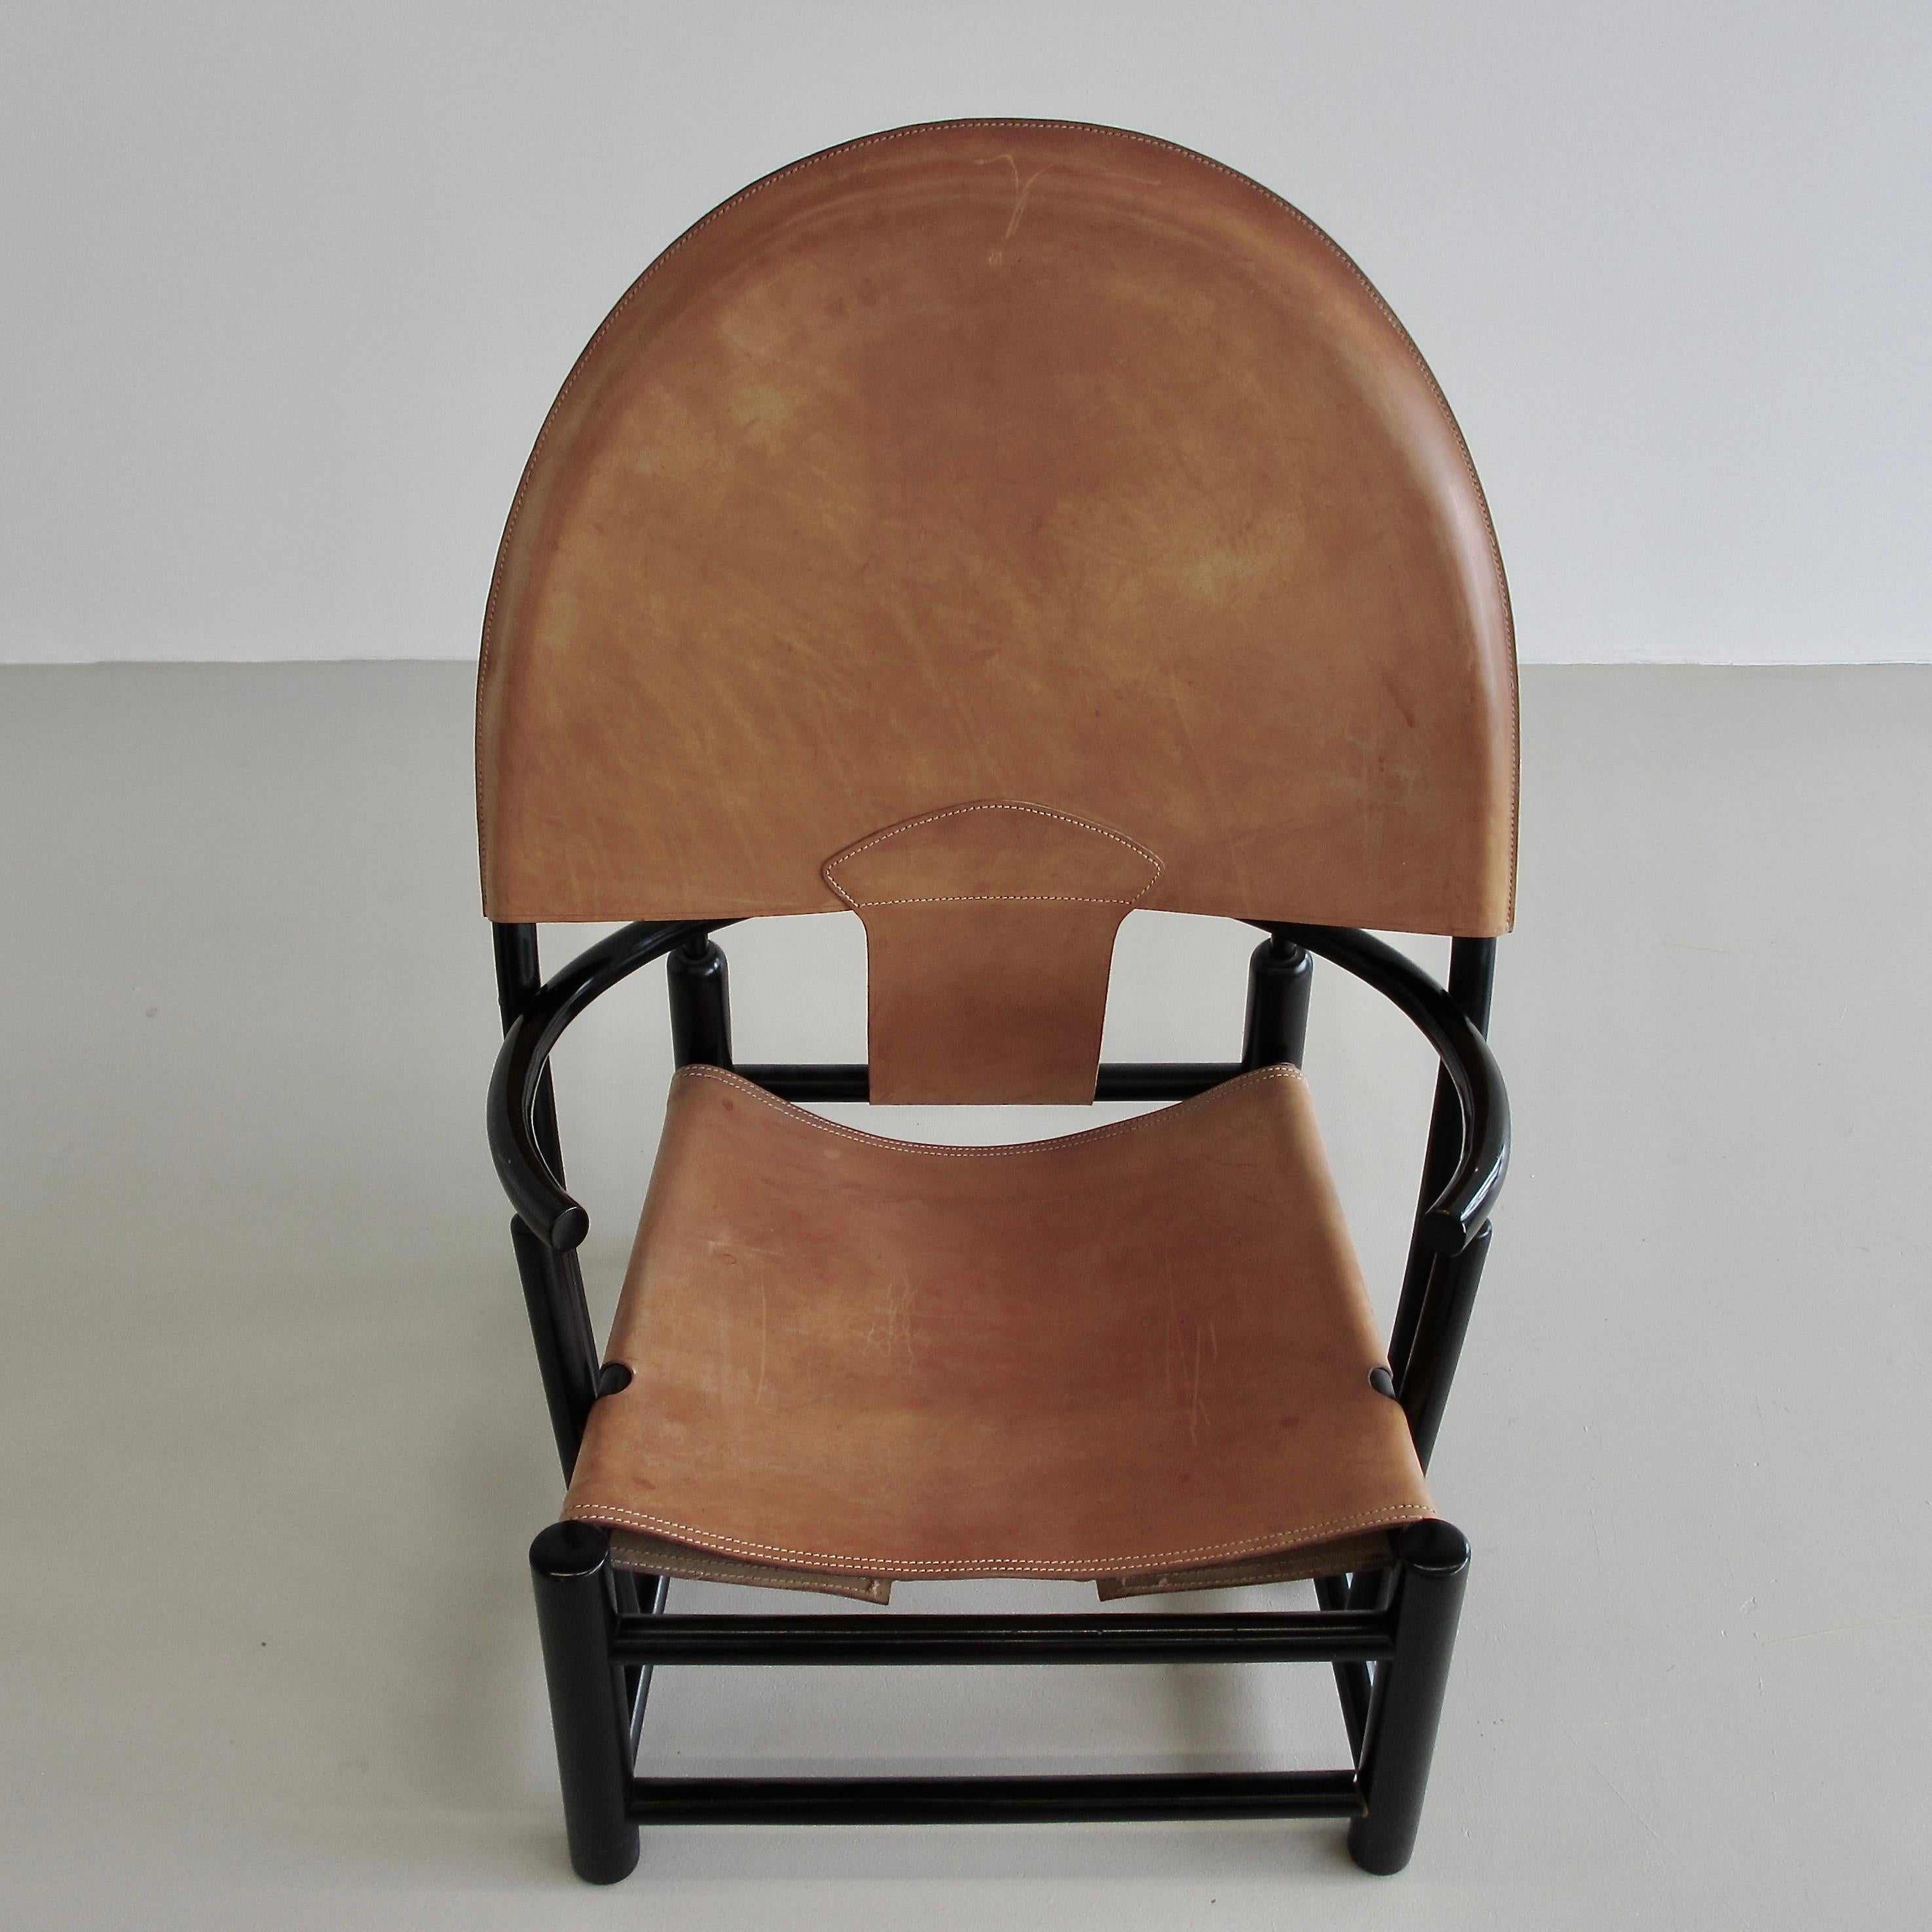 Fauteuil conçu par Piero Palange et Werther Toffolon. Italie, Germa, 1972.

Cadre en bois laqué noir avec le revêtement en cuir d'origine. C'est le modèle G23. Hauteur de l'assise : 35 cm.